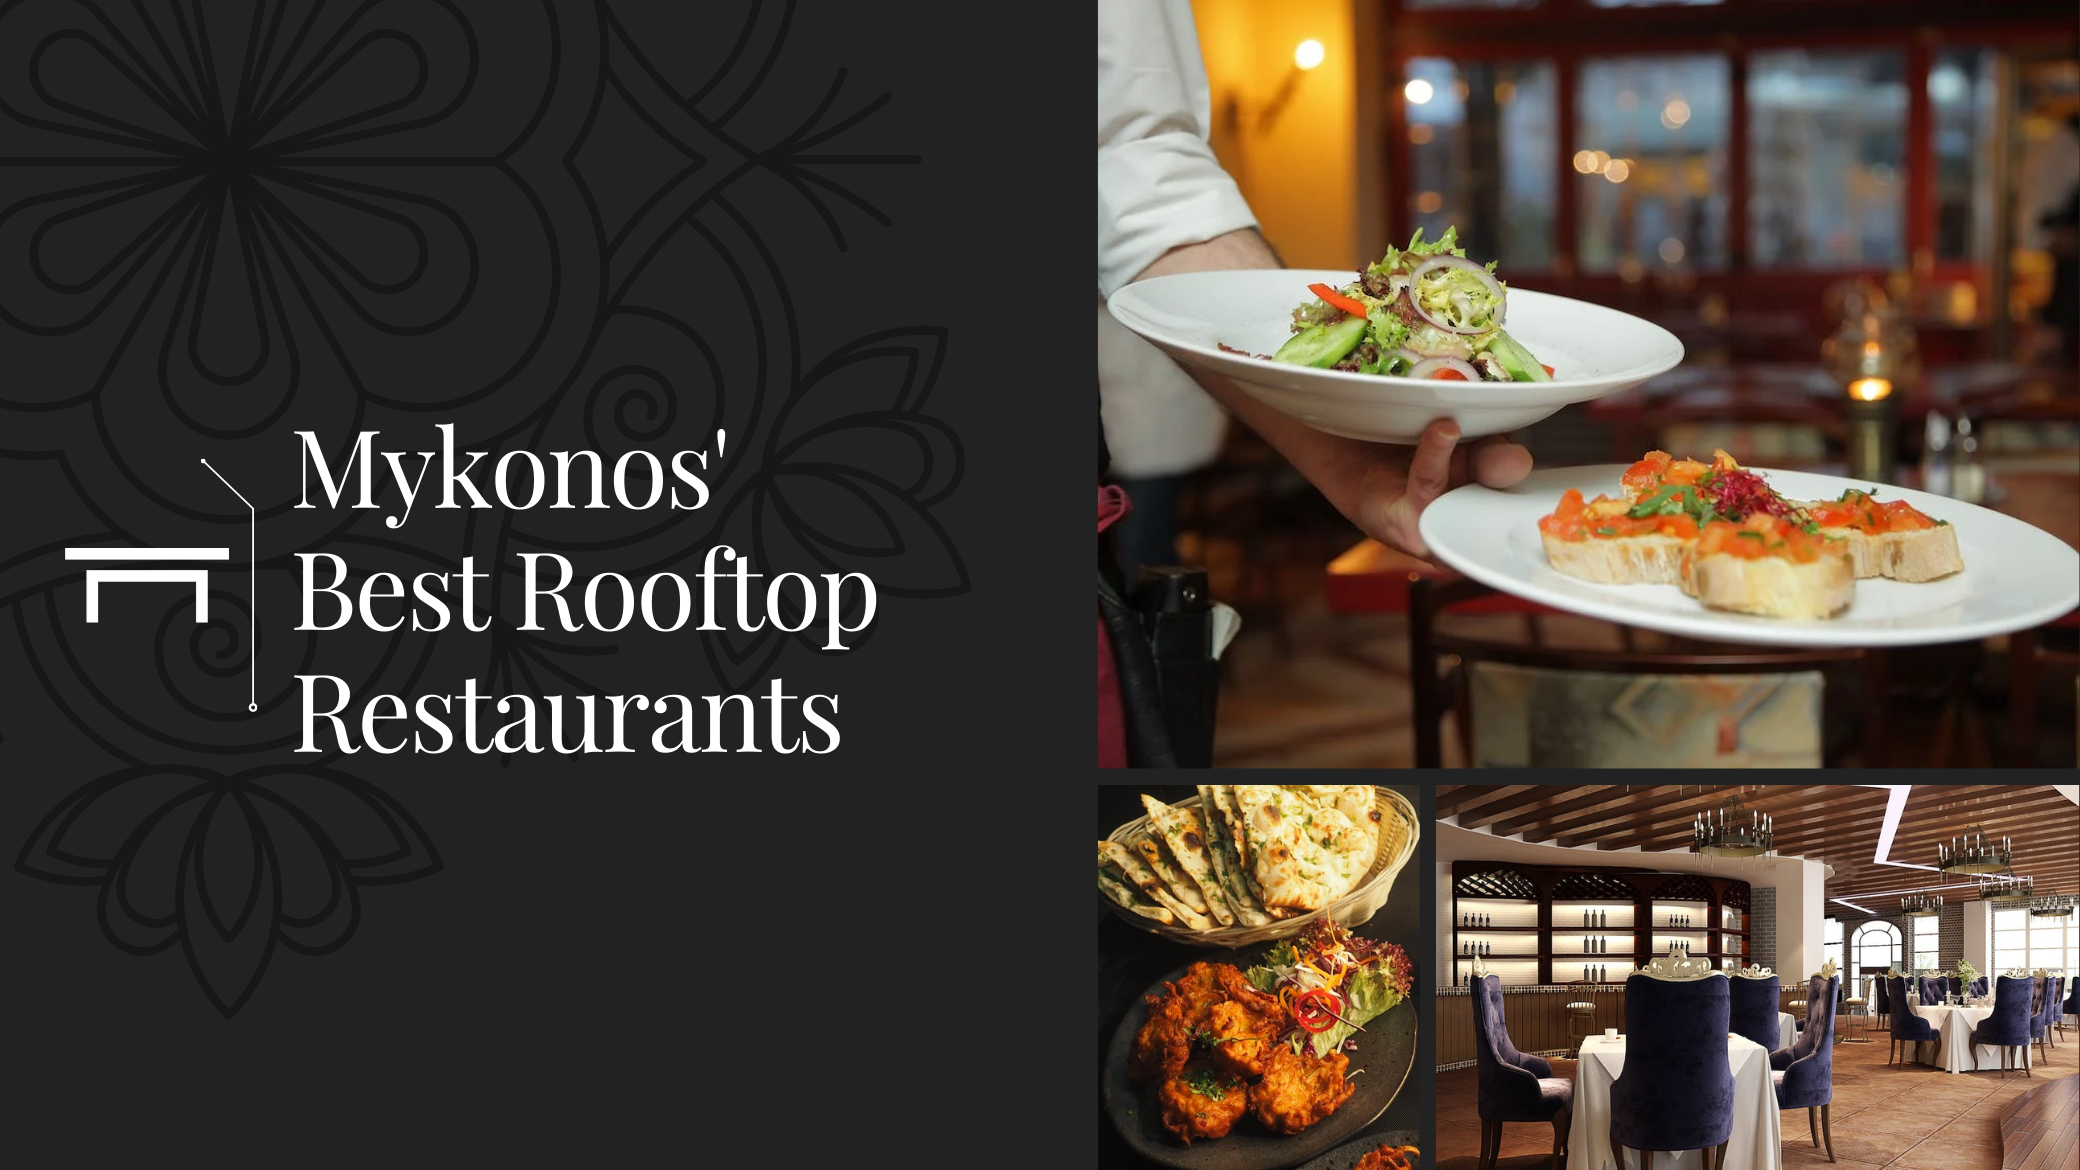 Mykonos' Best Rooftop Restaurants